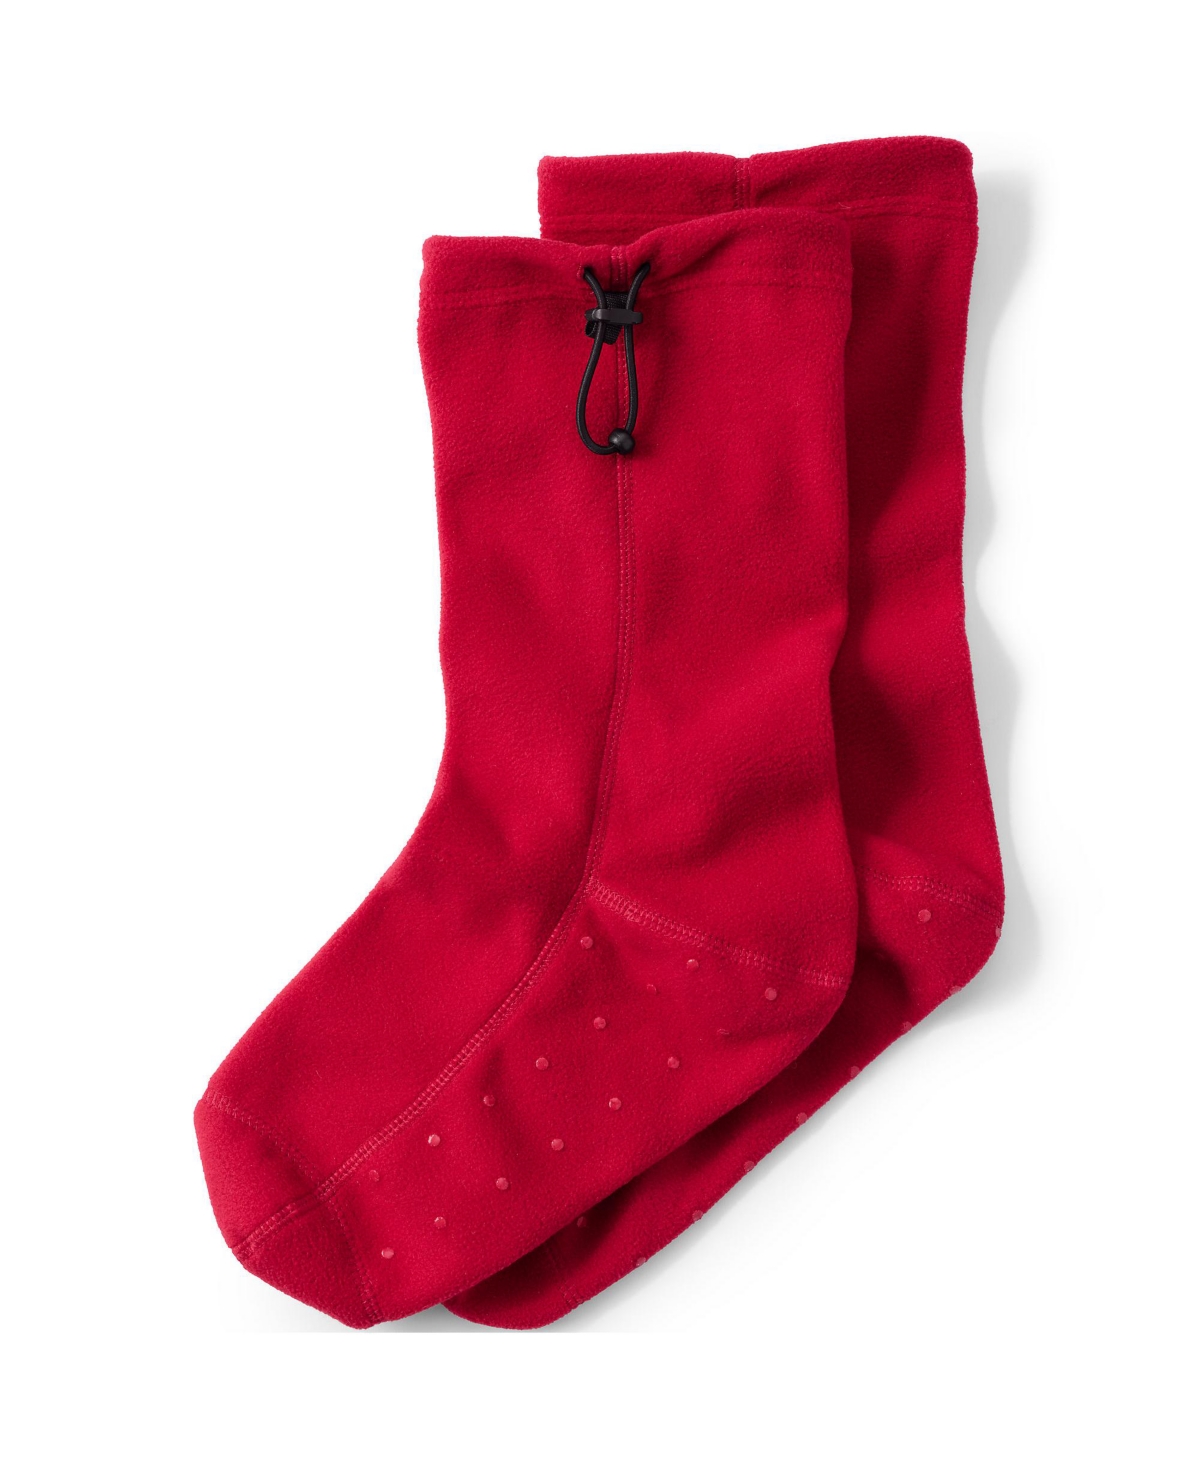 Women's Fleece Slipper Socks - Rich red